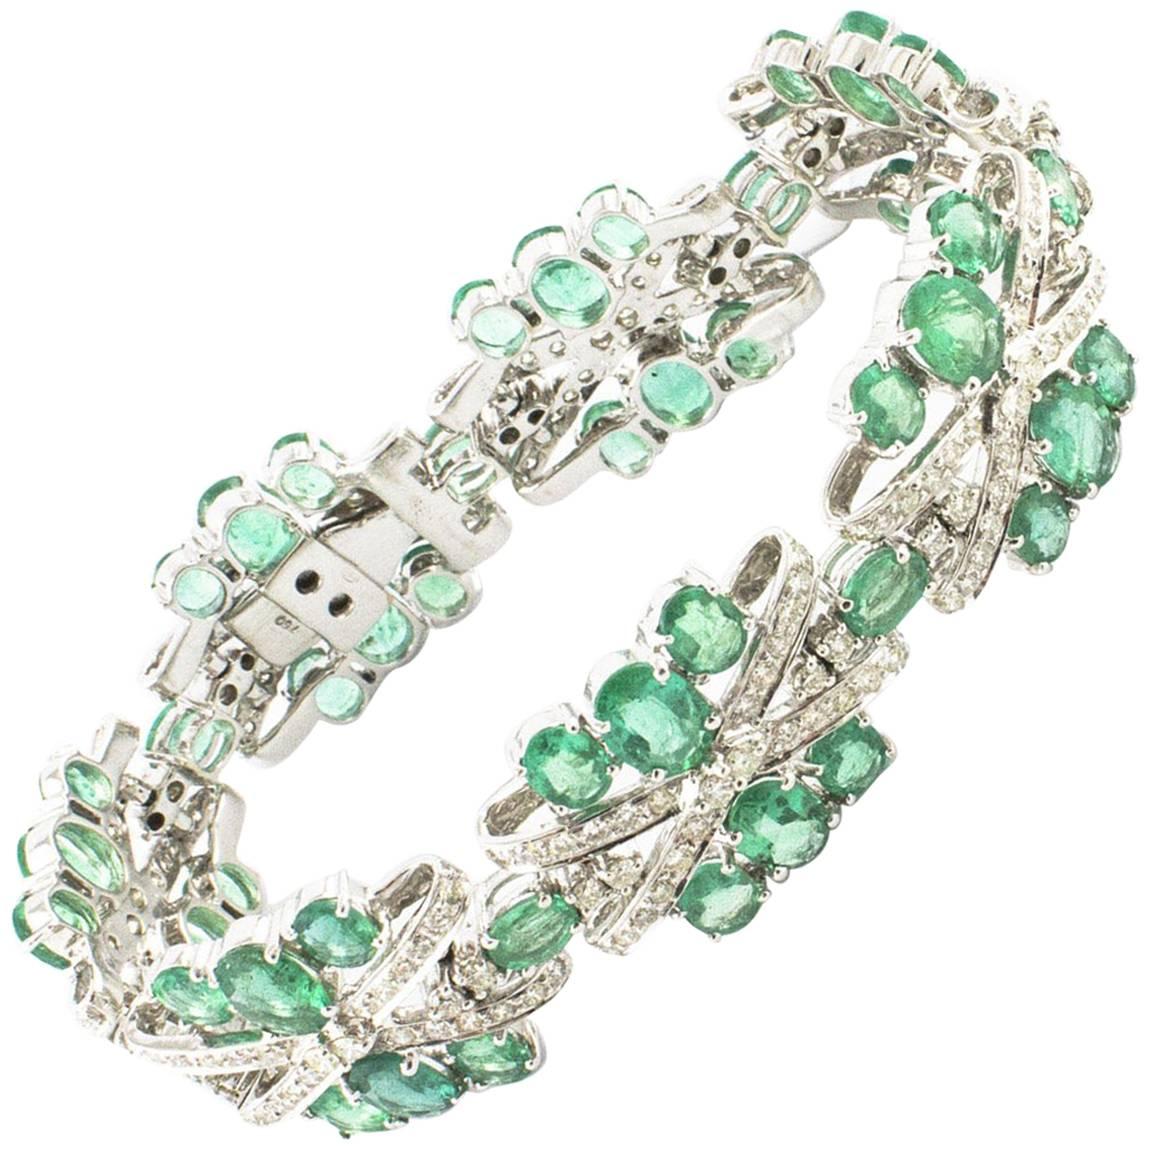   Diamonds Emeralds, 18 kt White Gold Bracelet